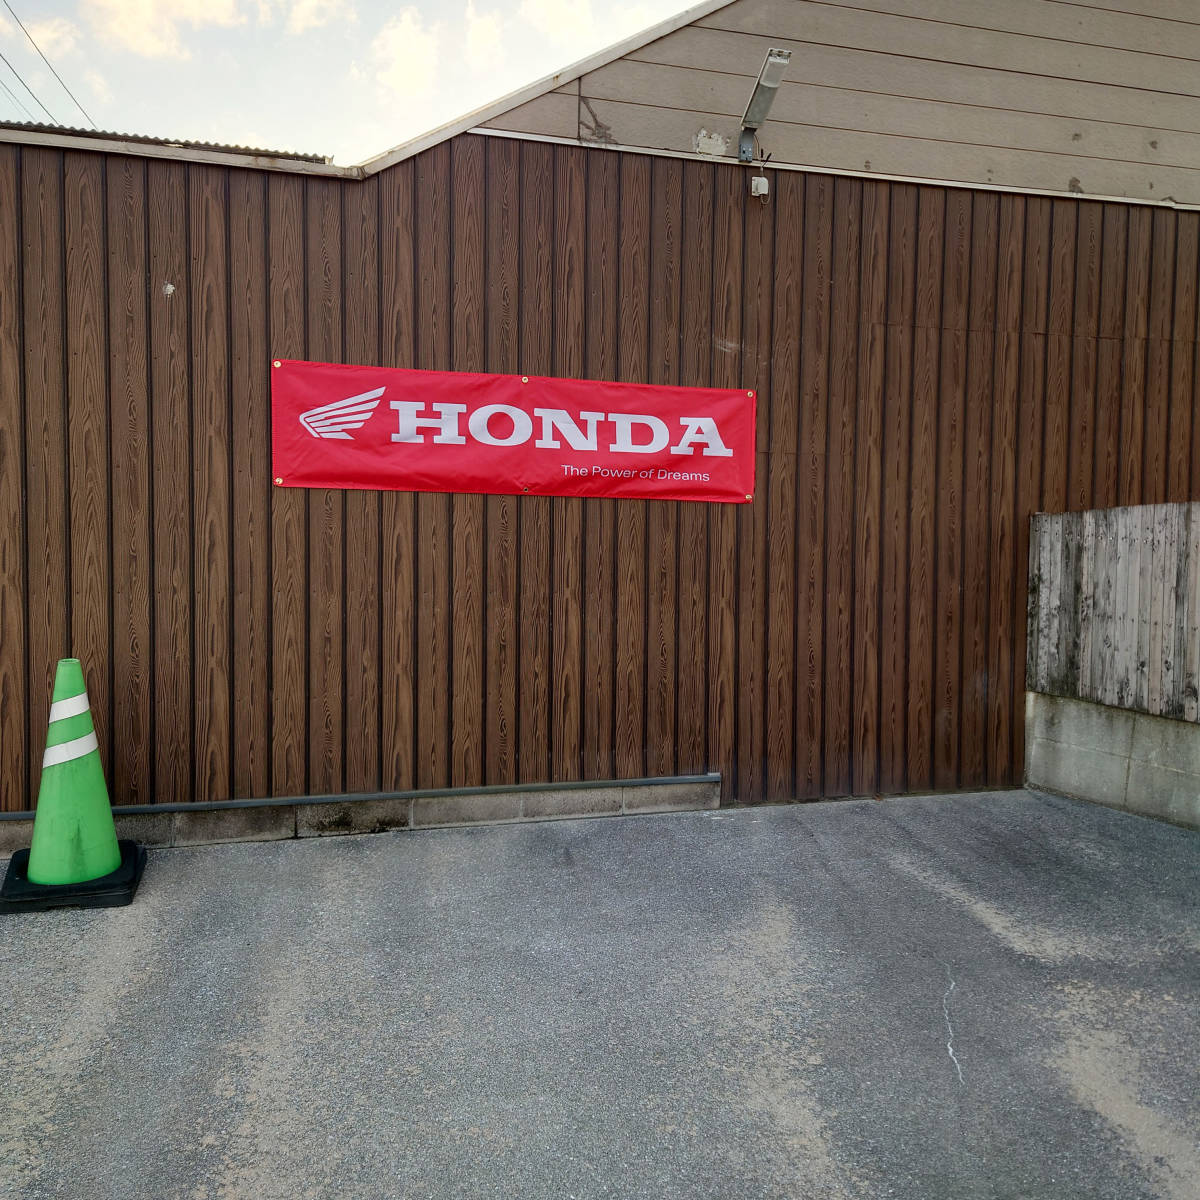 ホンダ フラッグ 450x1800㎜ HONDA R06 装飾 バイク ガレージ アメリカン雑貨 ポスター USA インテリア レーシング 旗 バナー 看板 旗の画像4